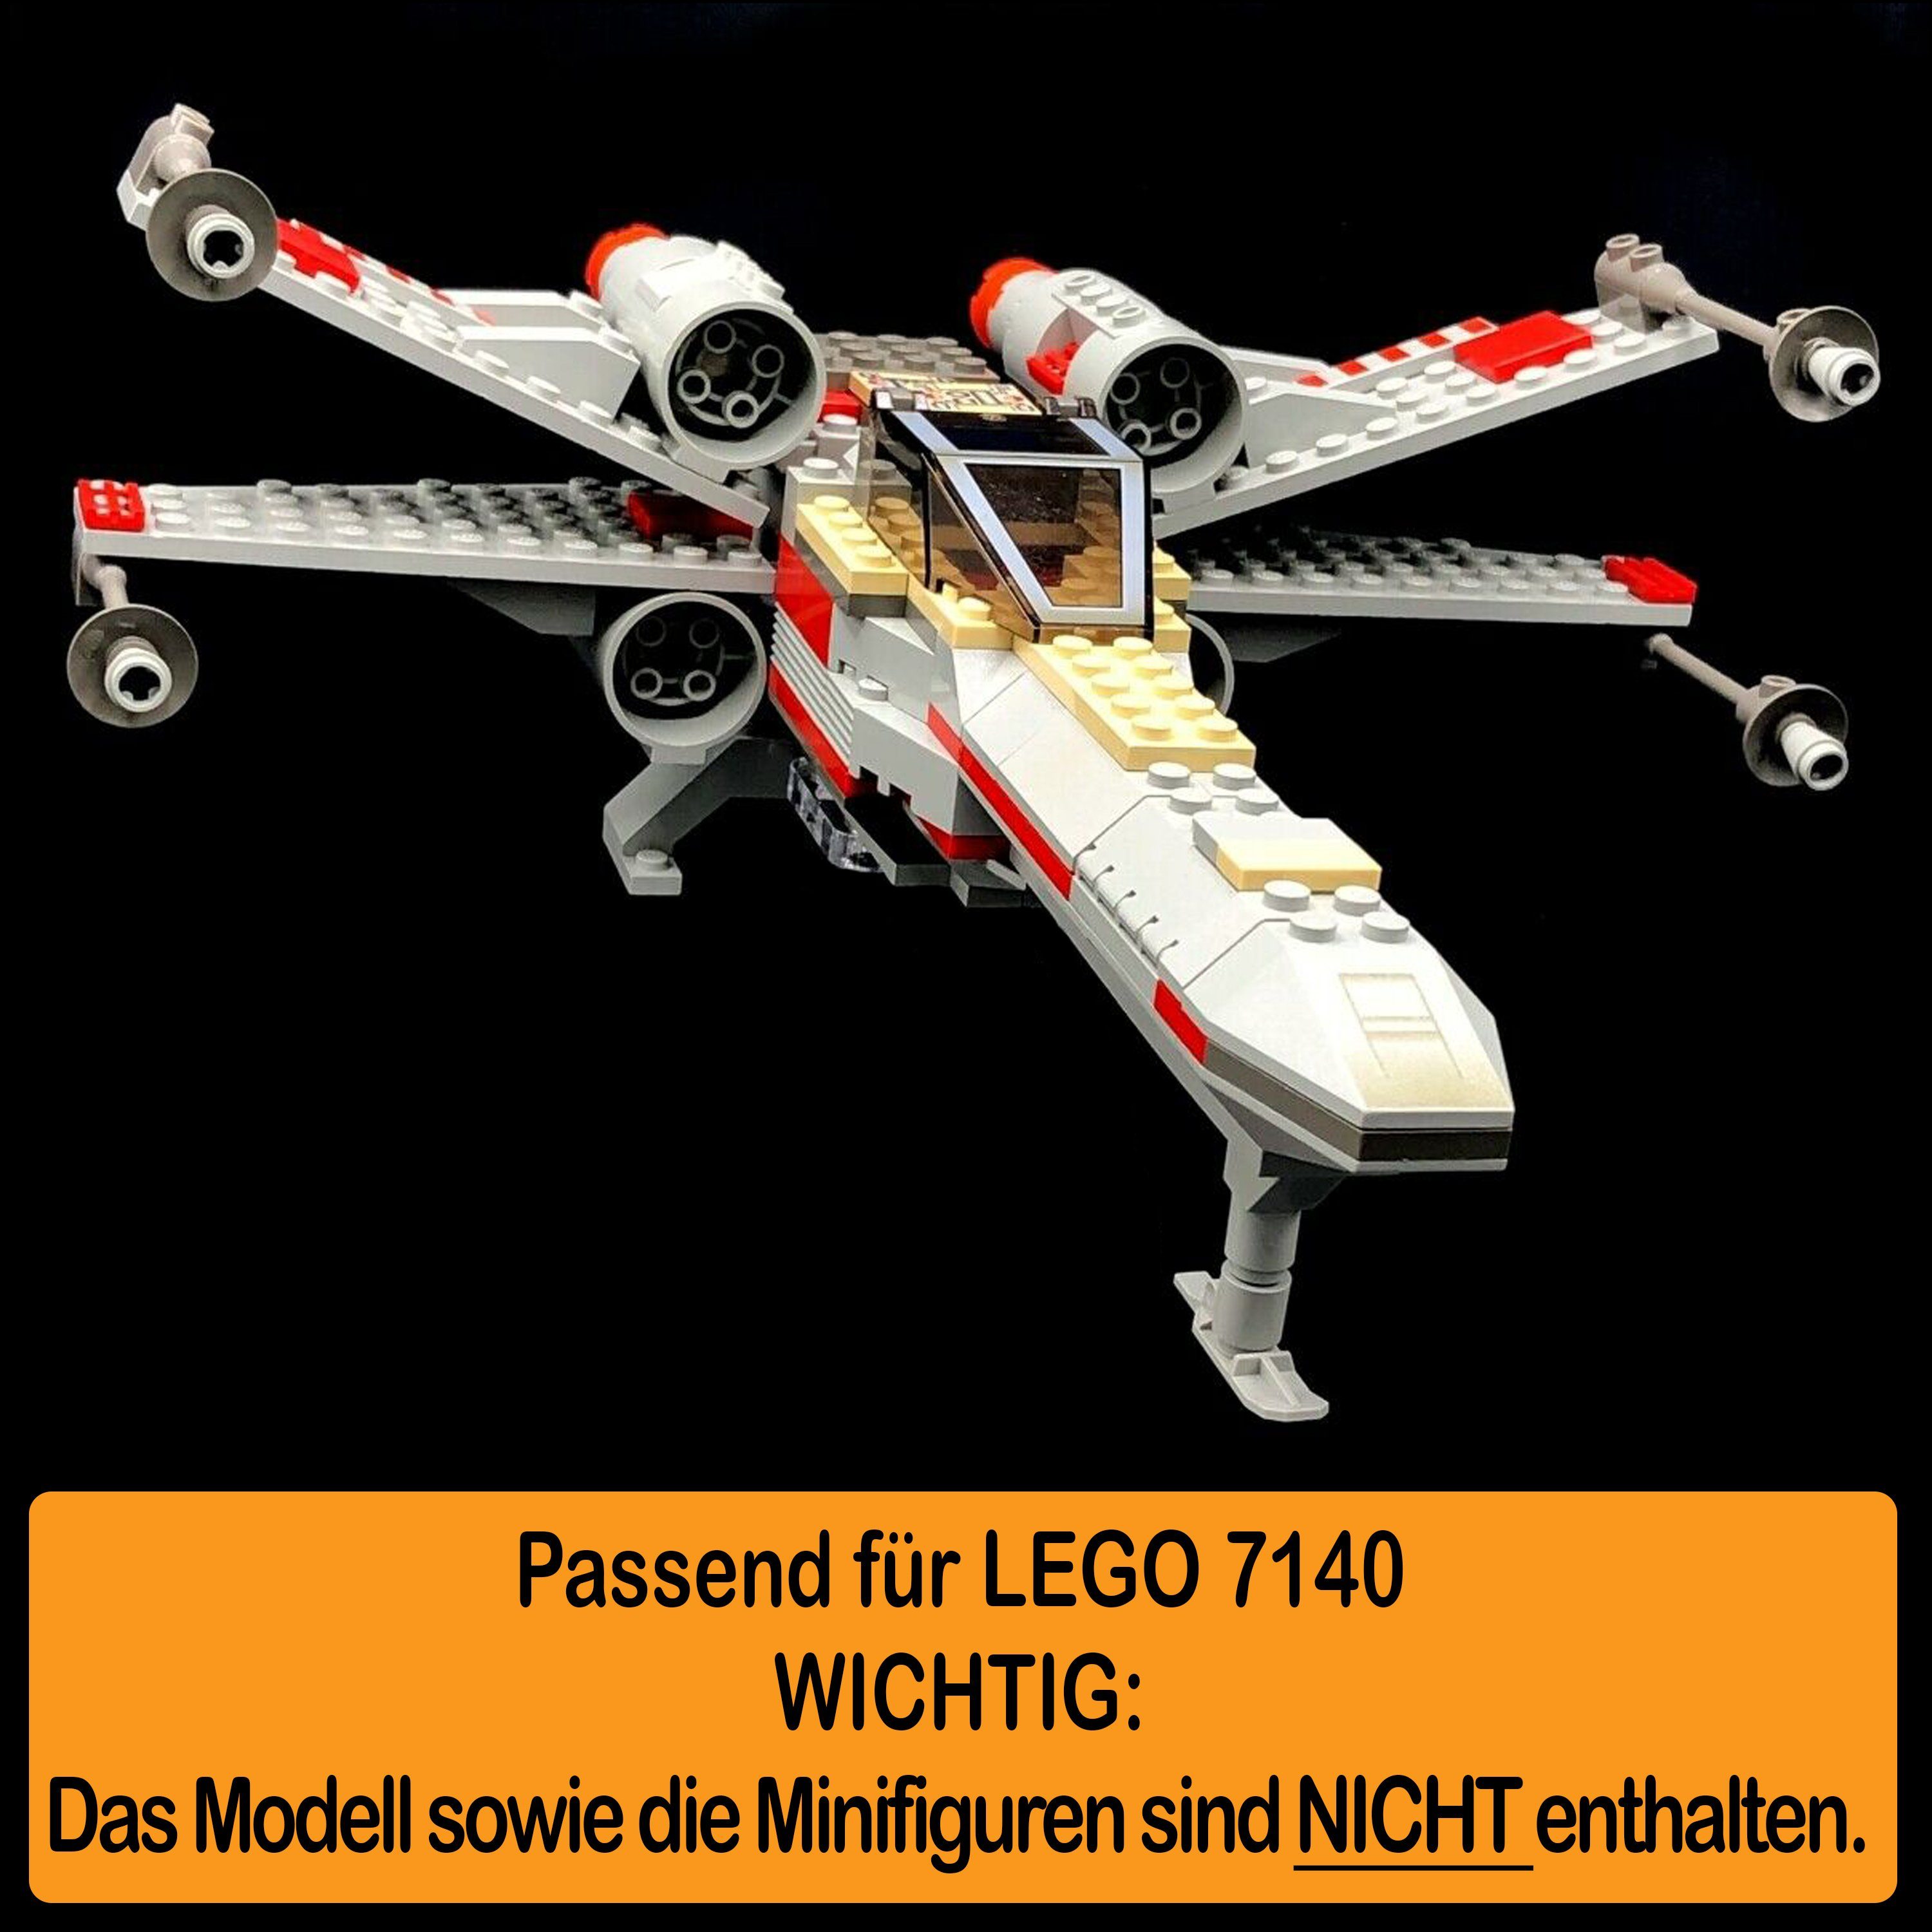 AREA17 Standfuß zusammenbauen), für Winkel Stand in Acryl (verschiedene X-Wing zum und Germany selbst LEGO Positionen 100% 7140 Made einstellbar, Fighter Display